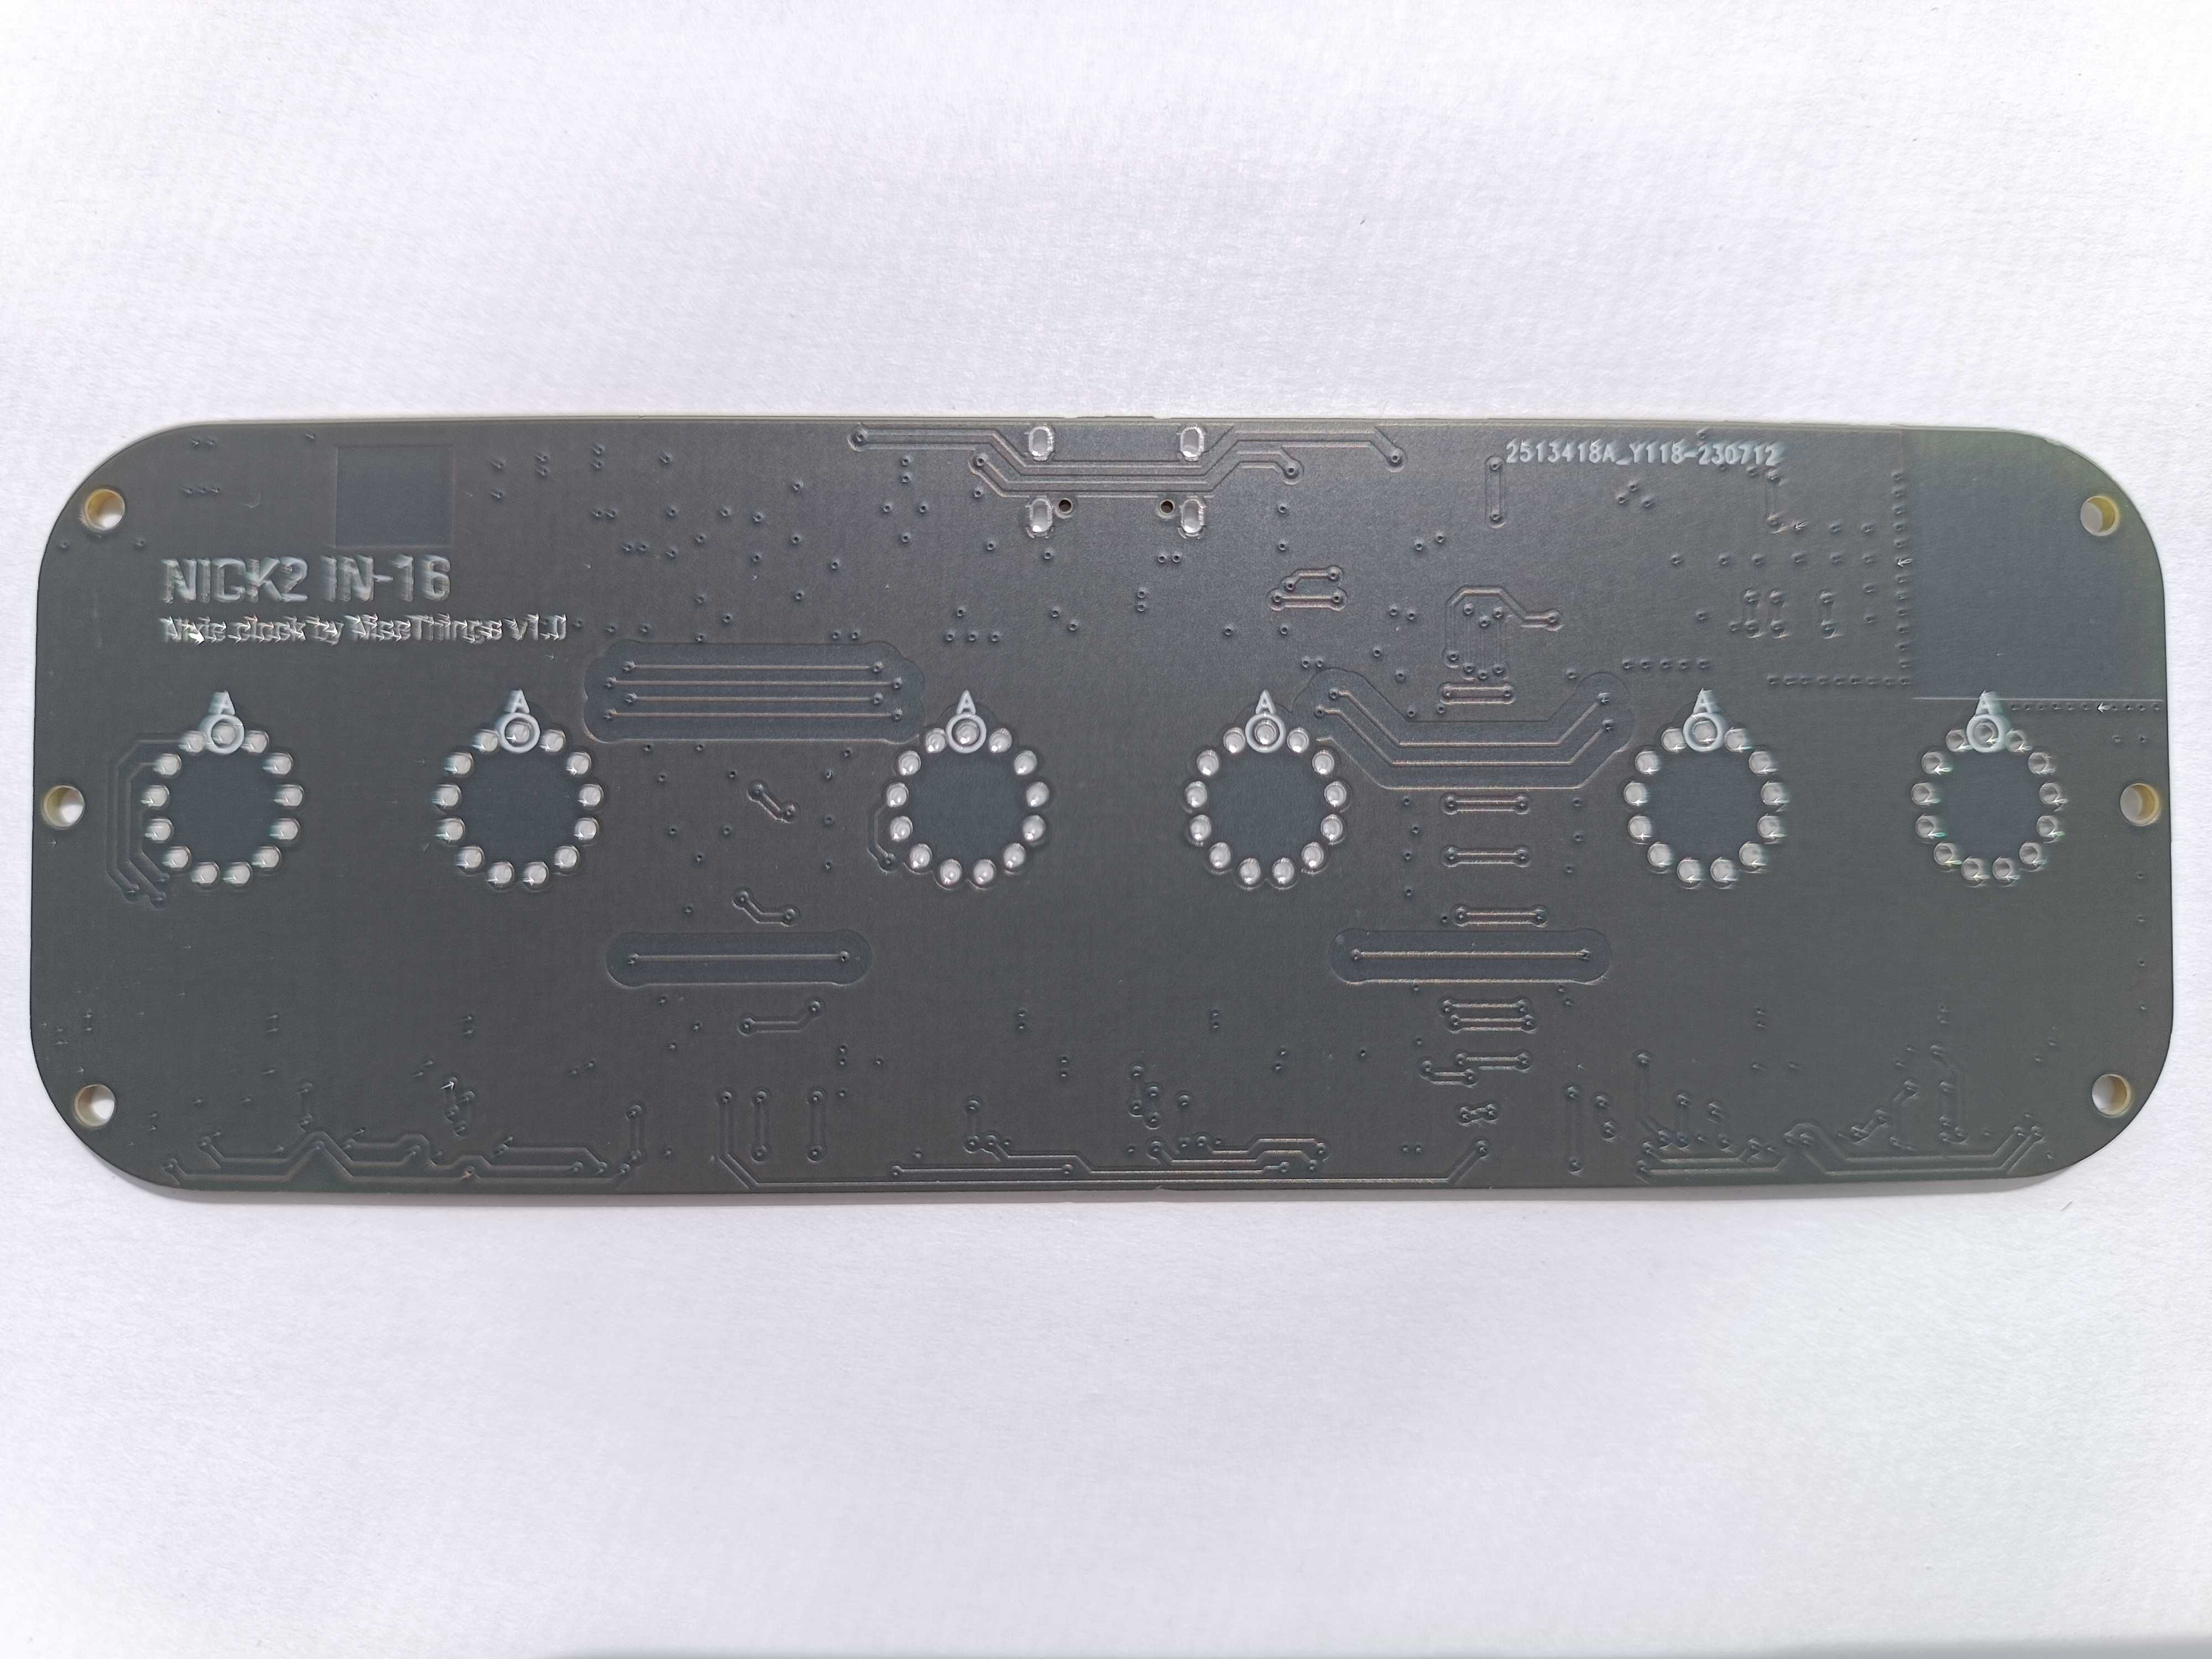 Друкована плата годинника Флора-ESP8266 на ин-16